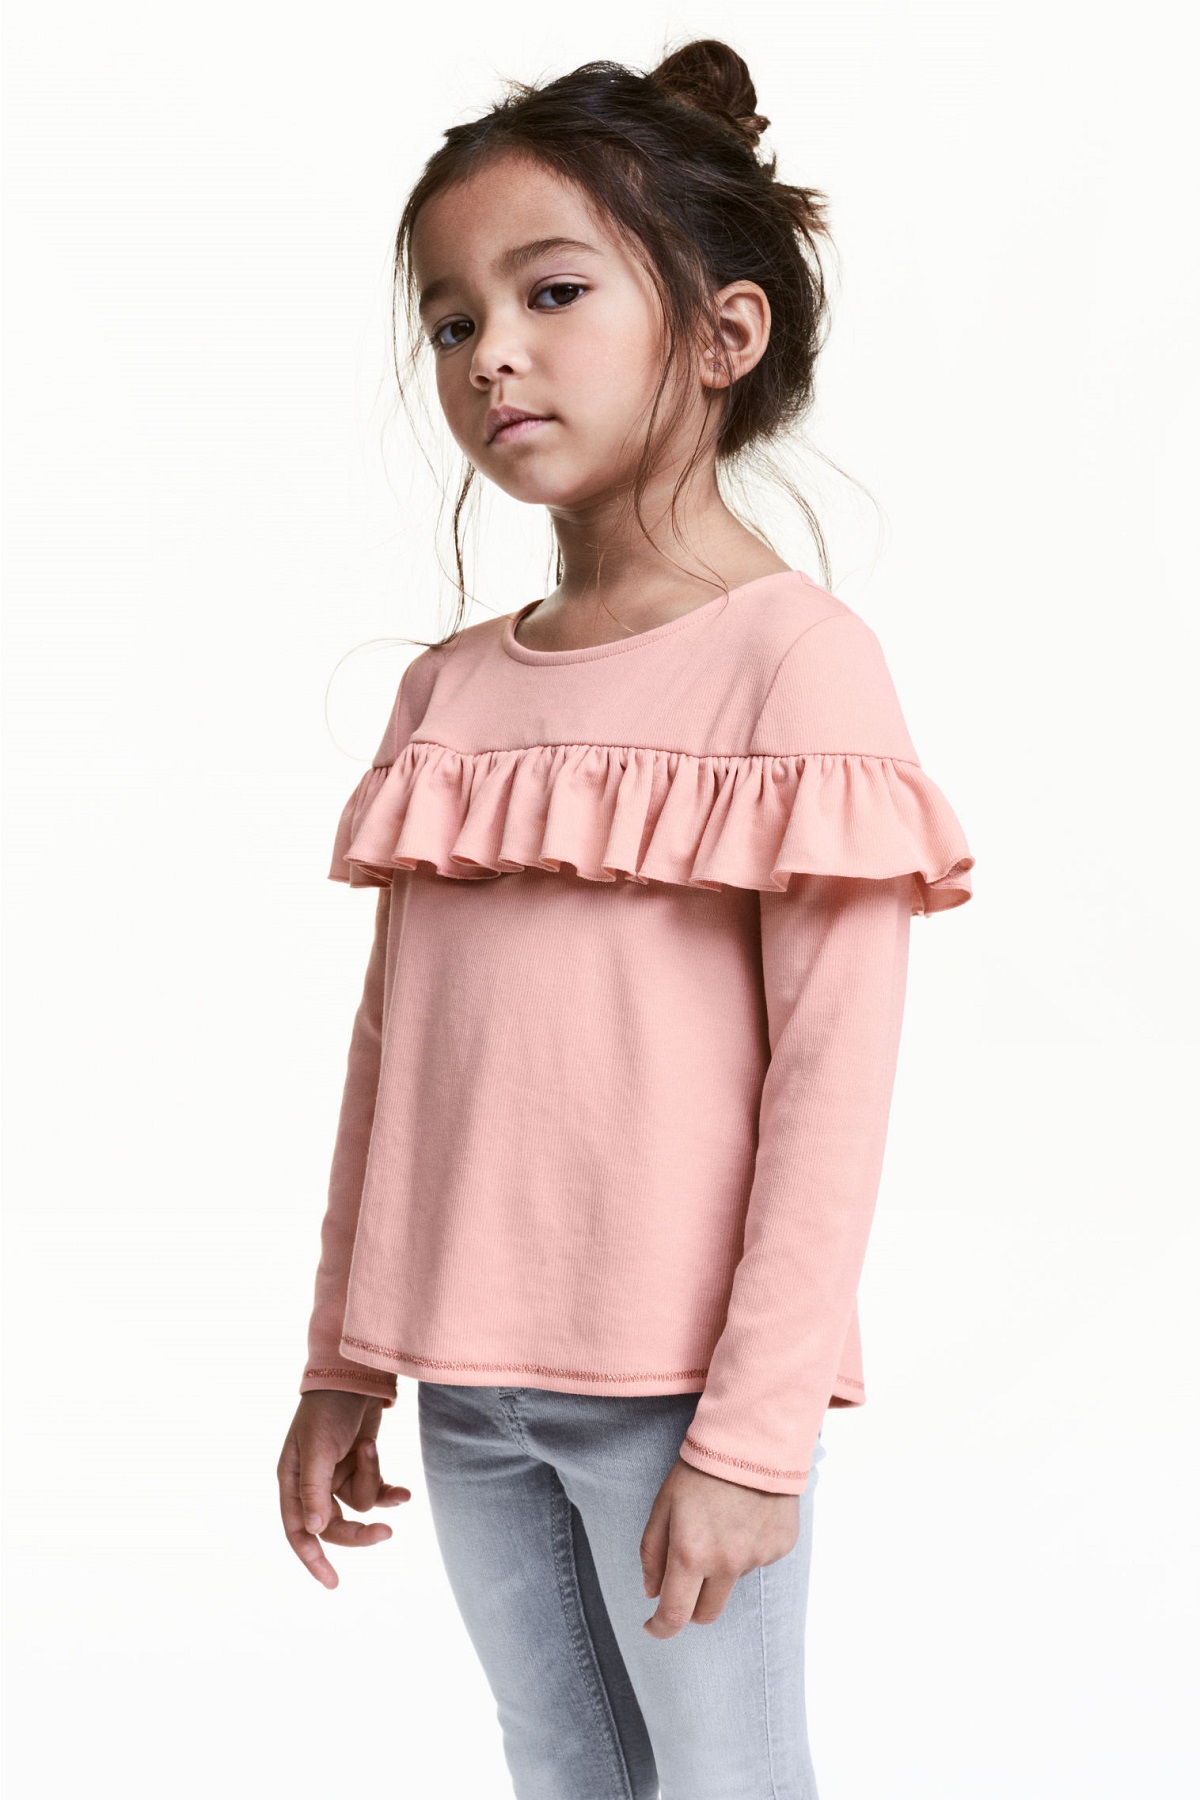 H&M y sus novedades de niña para vestir en 2017